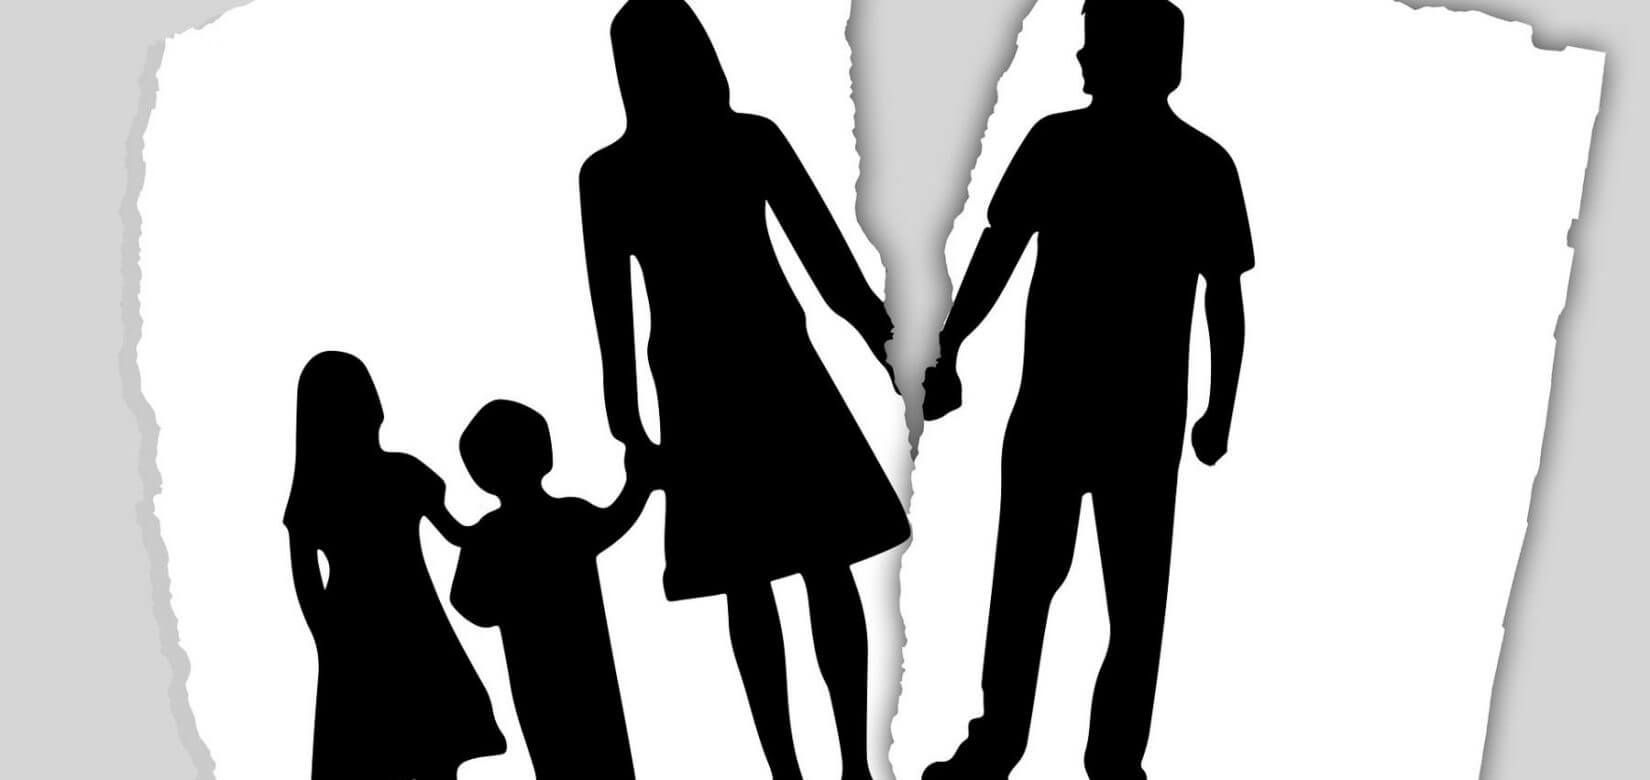 Συνεπιμέλεια: Γιατί καθυστερεί το νομοσχέδιο που αλλάζει ριζικά όσα ξέραμε για την ανατροφή των παιδιών μετά το διαζύγιο;